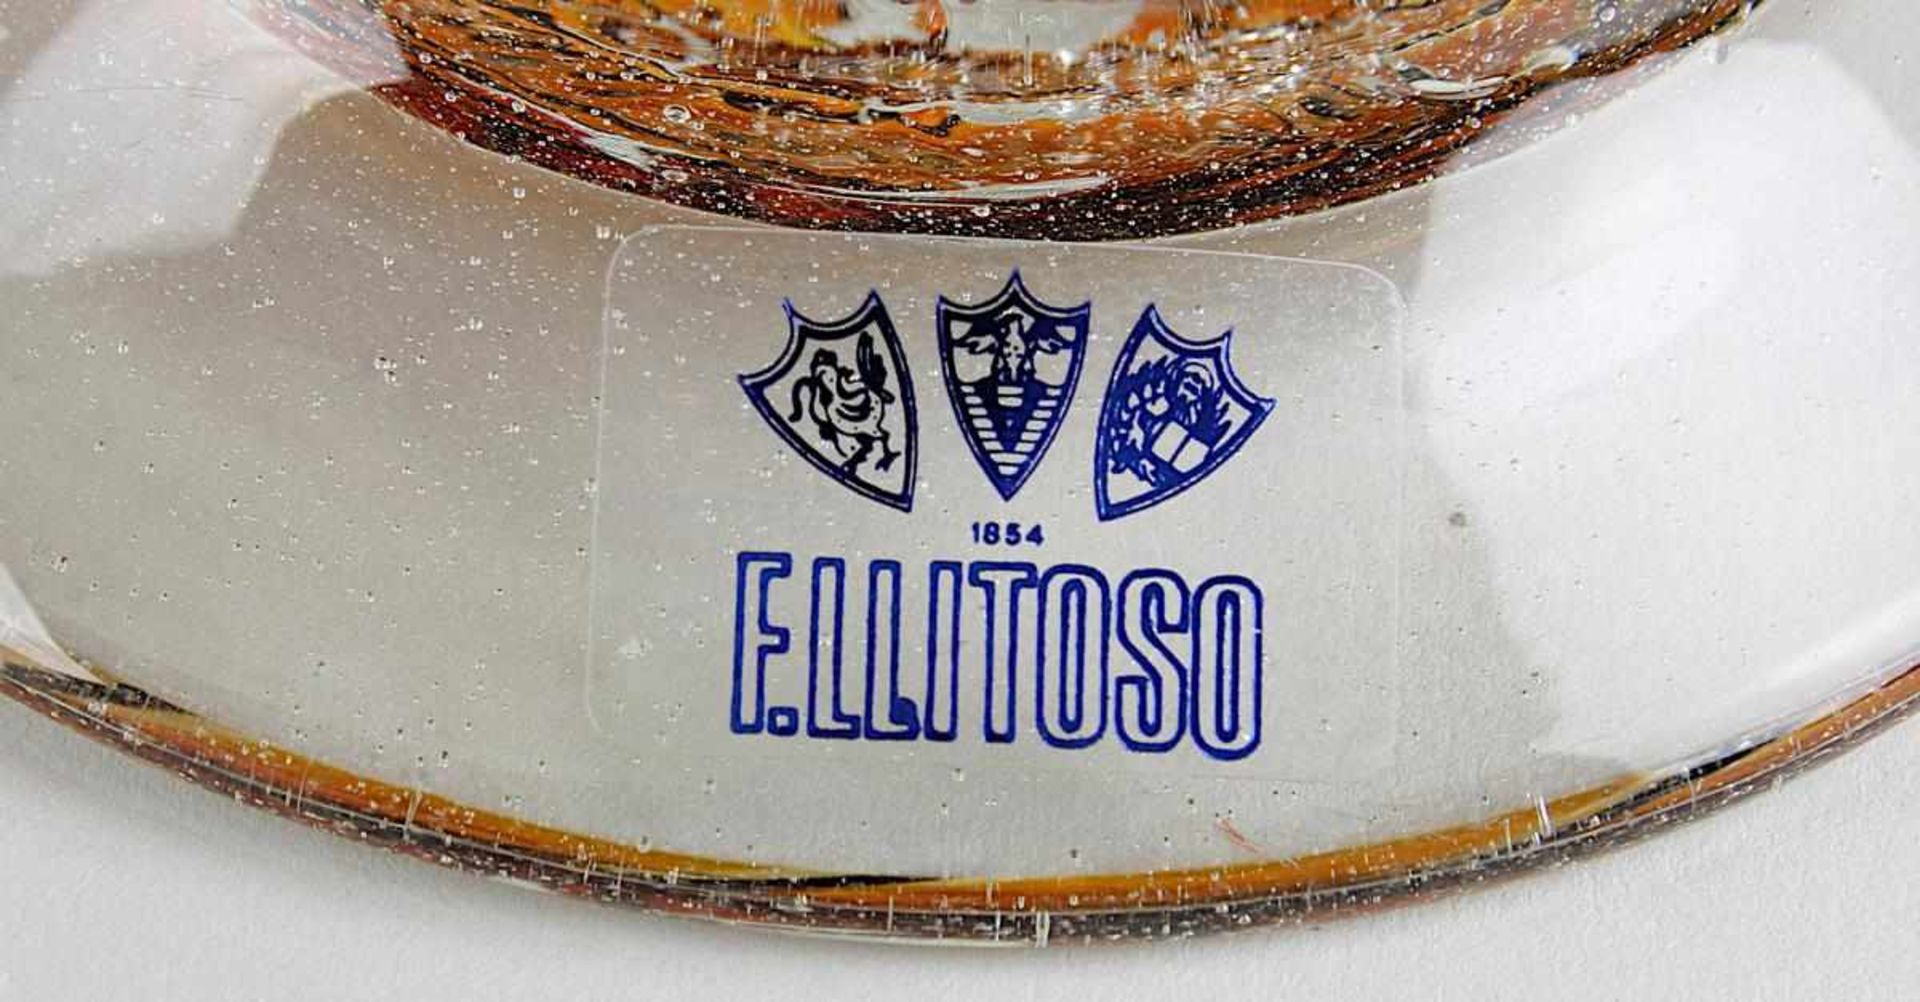 Murano Glaskrug, Hersteller Elli Toso, spiralförmig aneinandergestetzte und verschmolzene Glasfäden, - Bild 2 aus 2